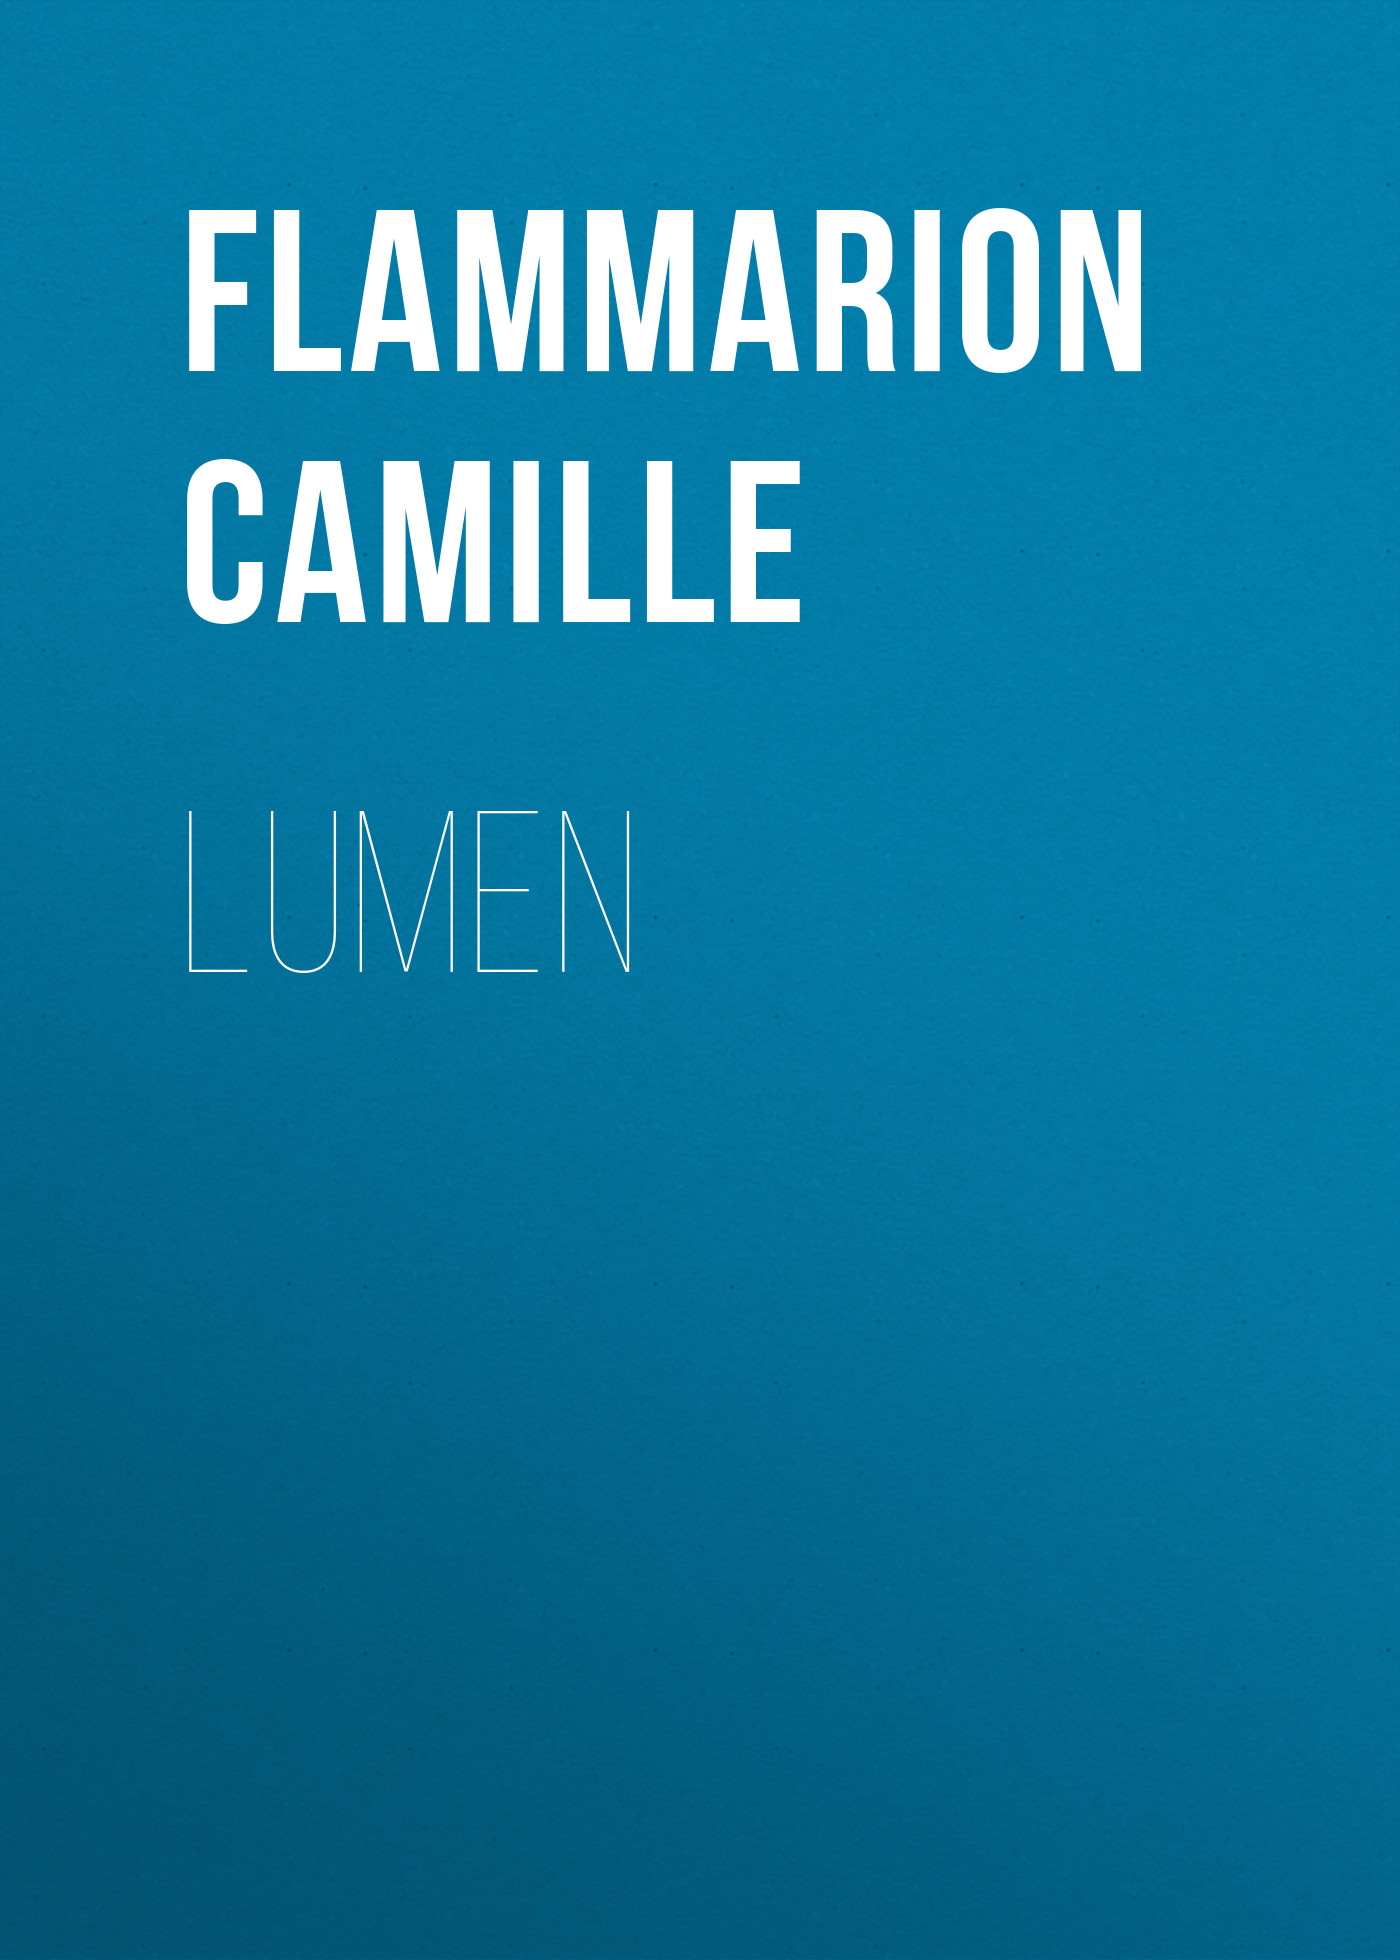 Книга Lumen из серии , созданная Camille Flammarion, может относится к жанру Зарубежная старинная литература, Зарубежная классика, Зарубежная фантастика. Стоимость электронной книги Lumen с идентификатором 24728009 составляет 0 руб.